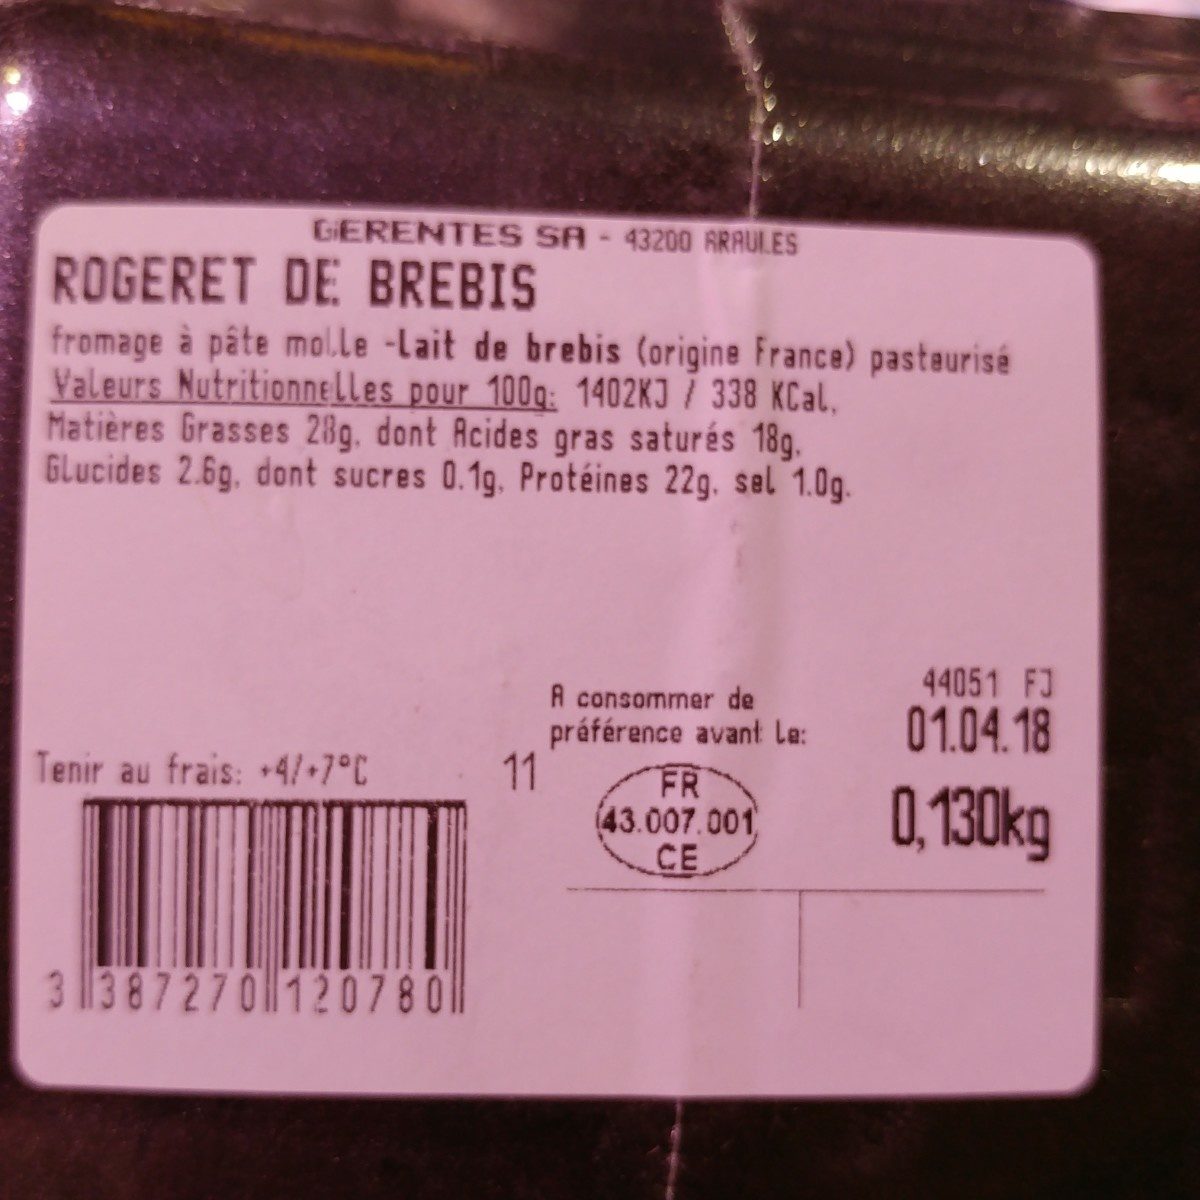 Rogeret de brebis - Ingrédients